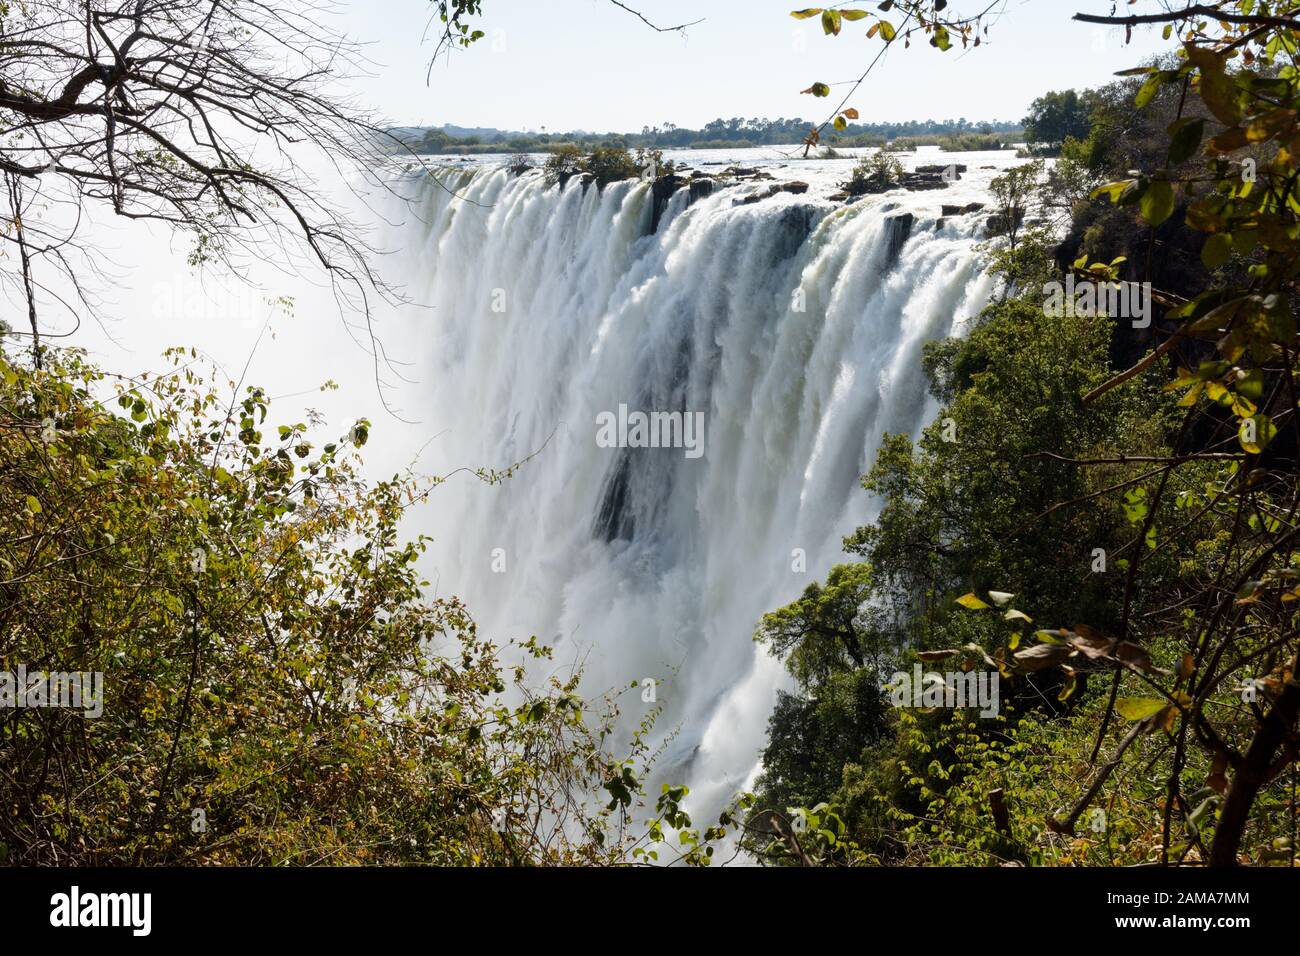 Victoria Falls from the Zambian side of the Zambezi river Stock Photo